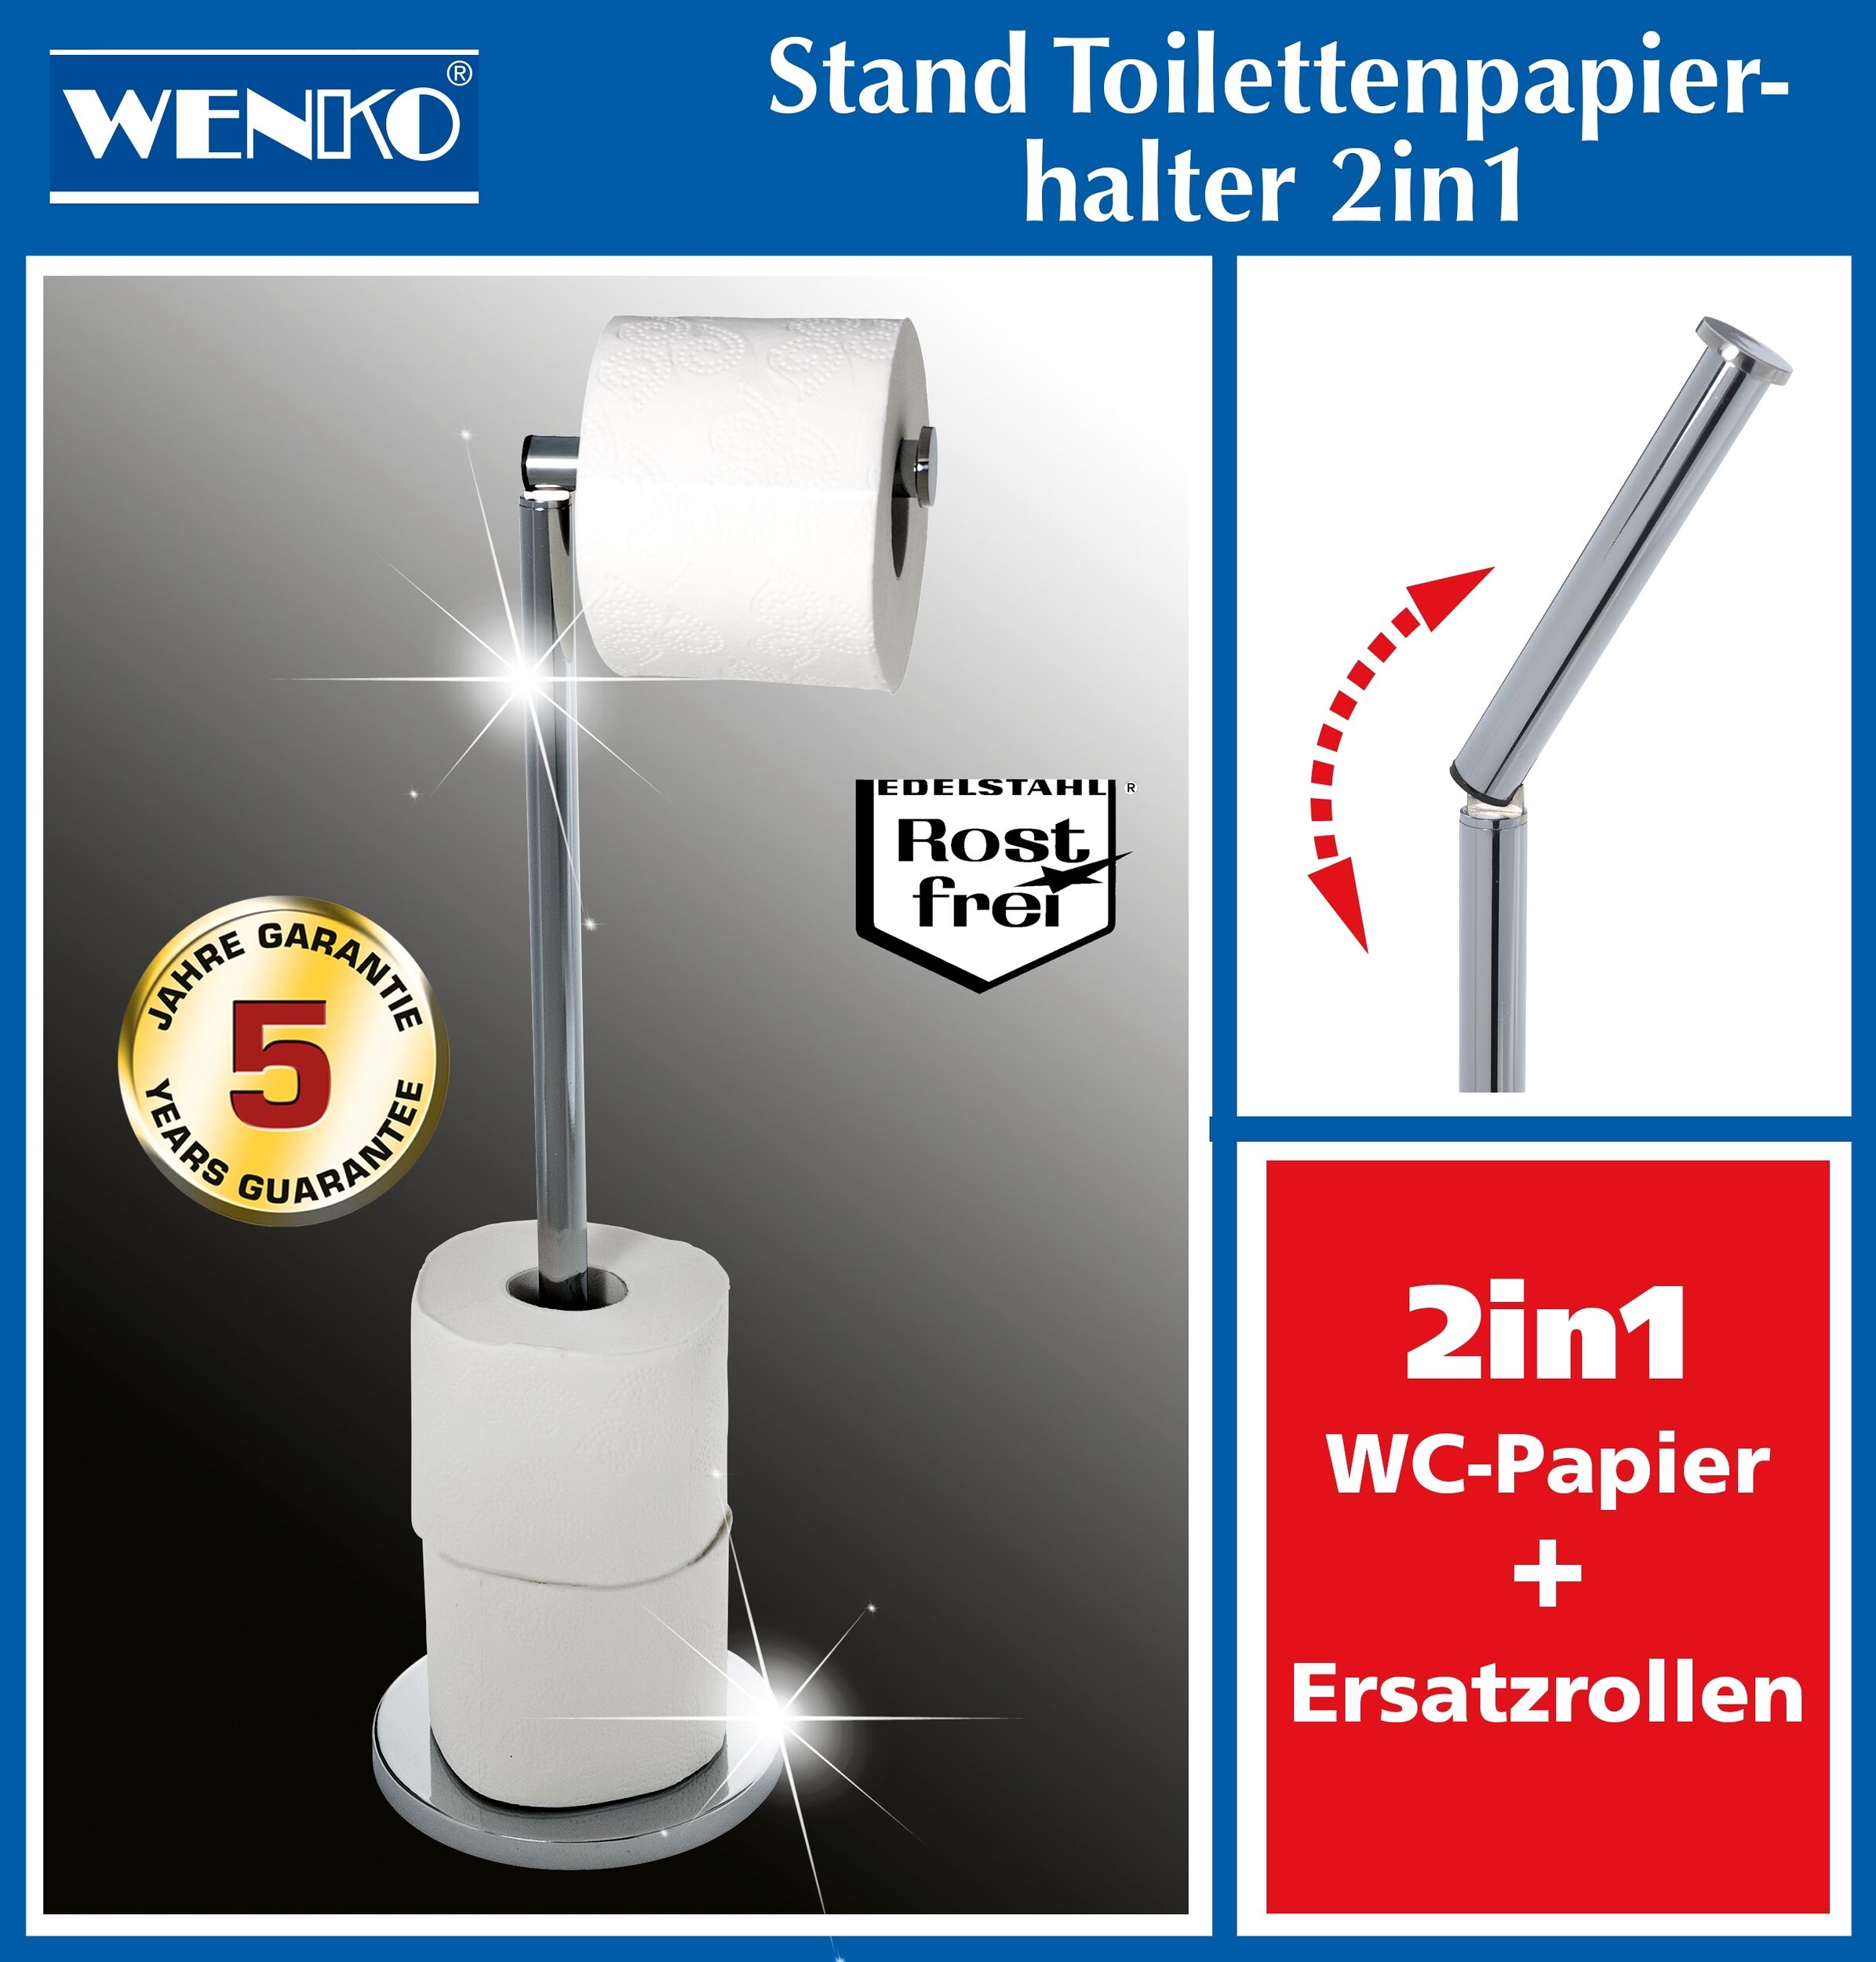 Maximex 2in1 Stand Toilettenpapierhalter, Edelstahl, 4 platzsparend, zu für Ersatzrollen bis